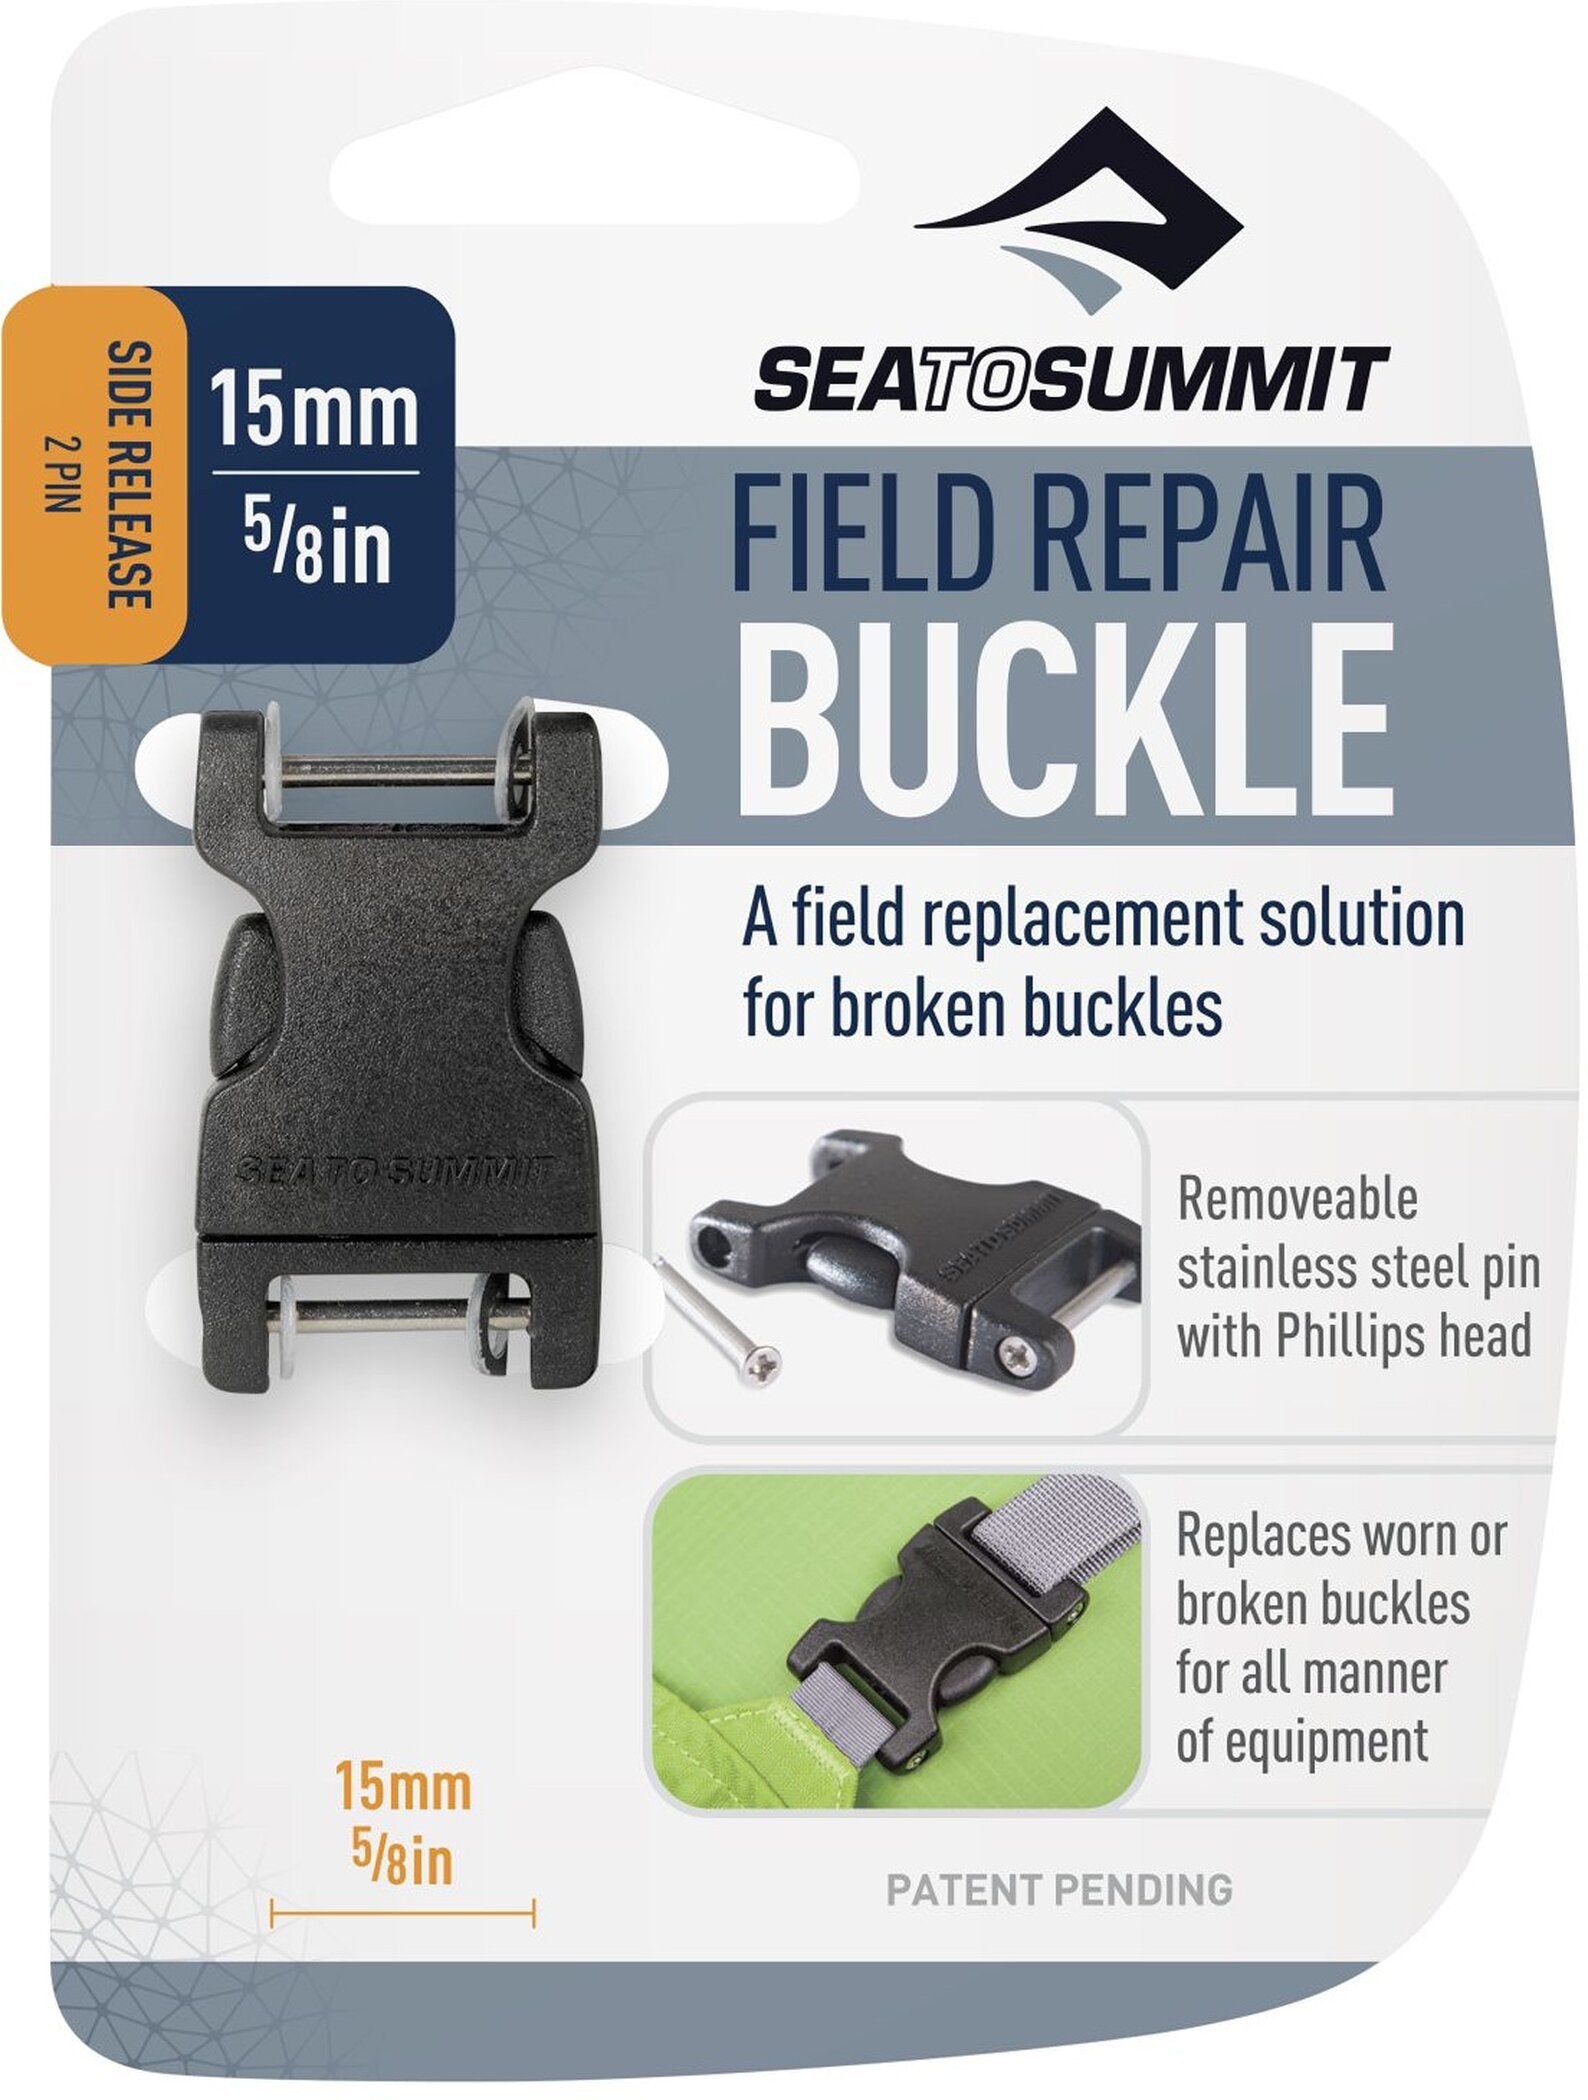 Rucksack Field Repair Buckle - 15mm Side Release 2 pin